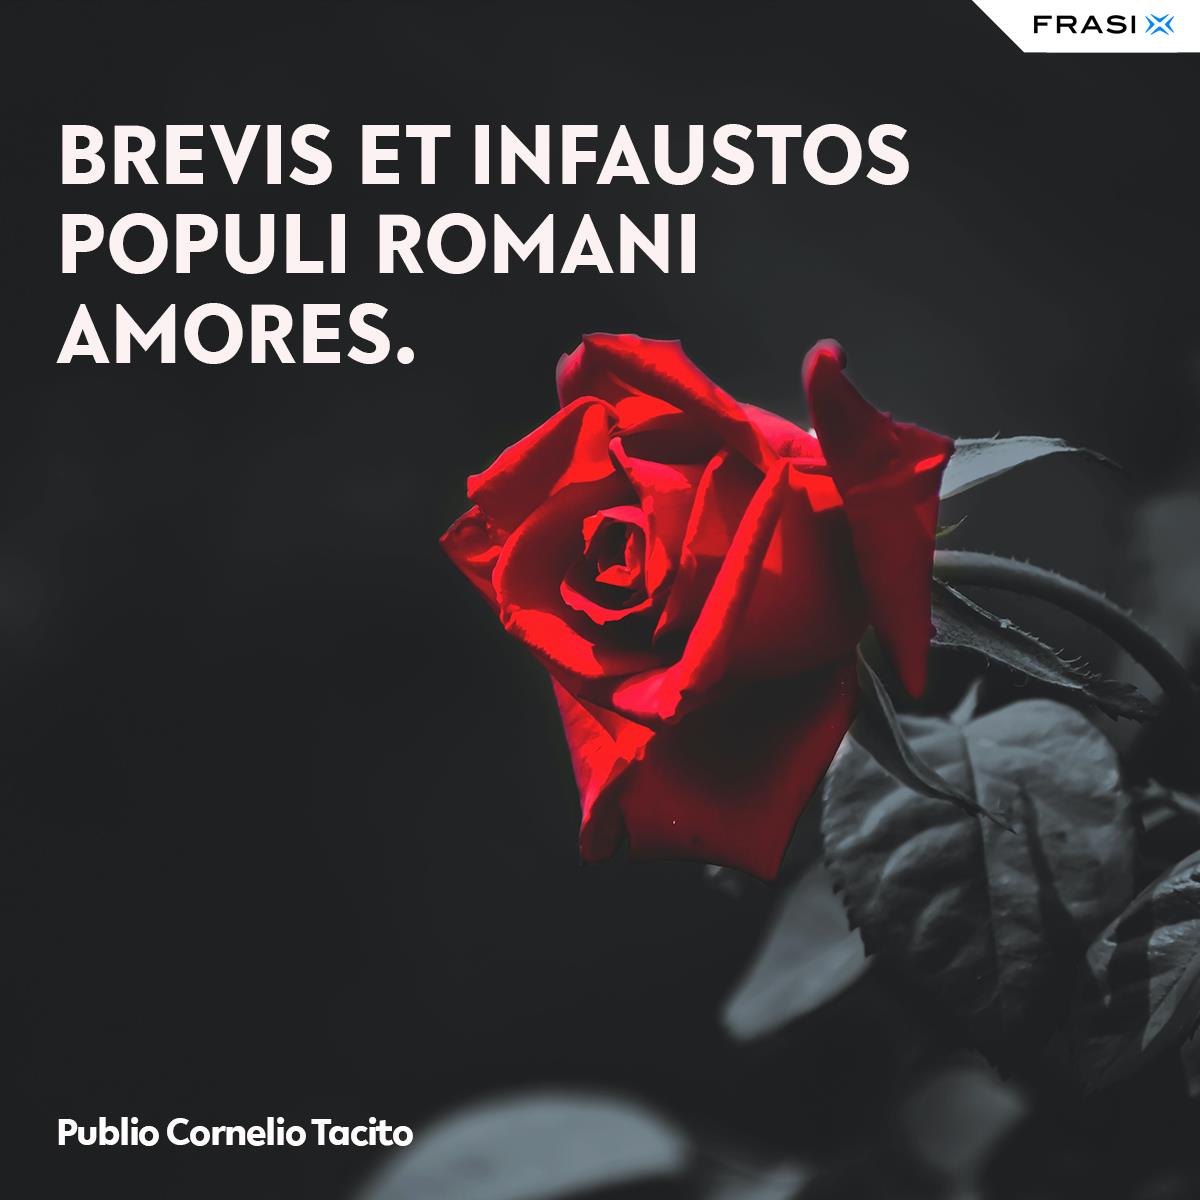 Frasi latine su Roma Publio Cornelio Tacito